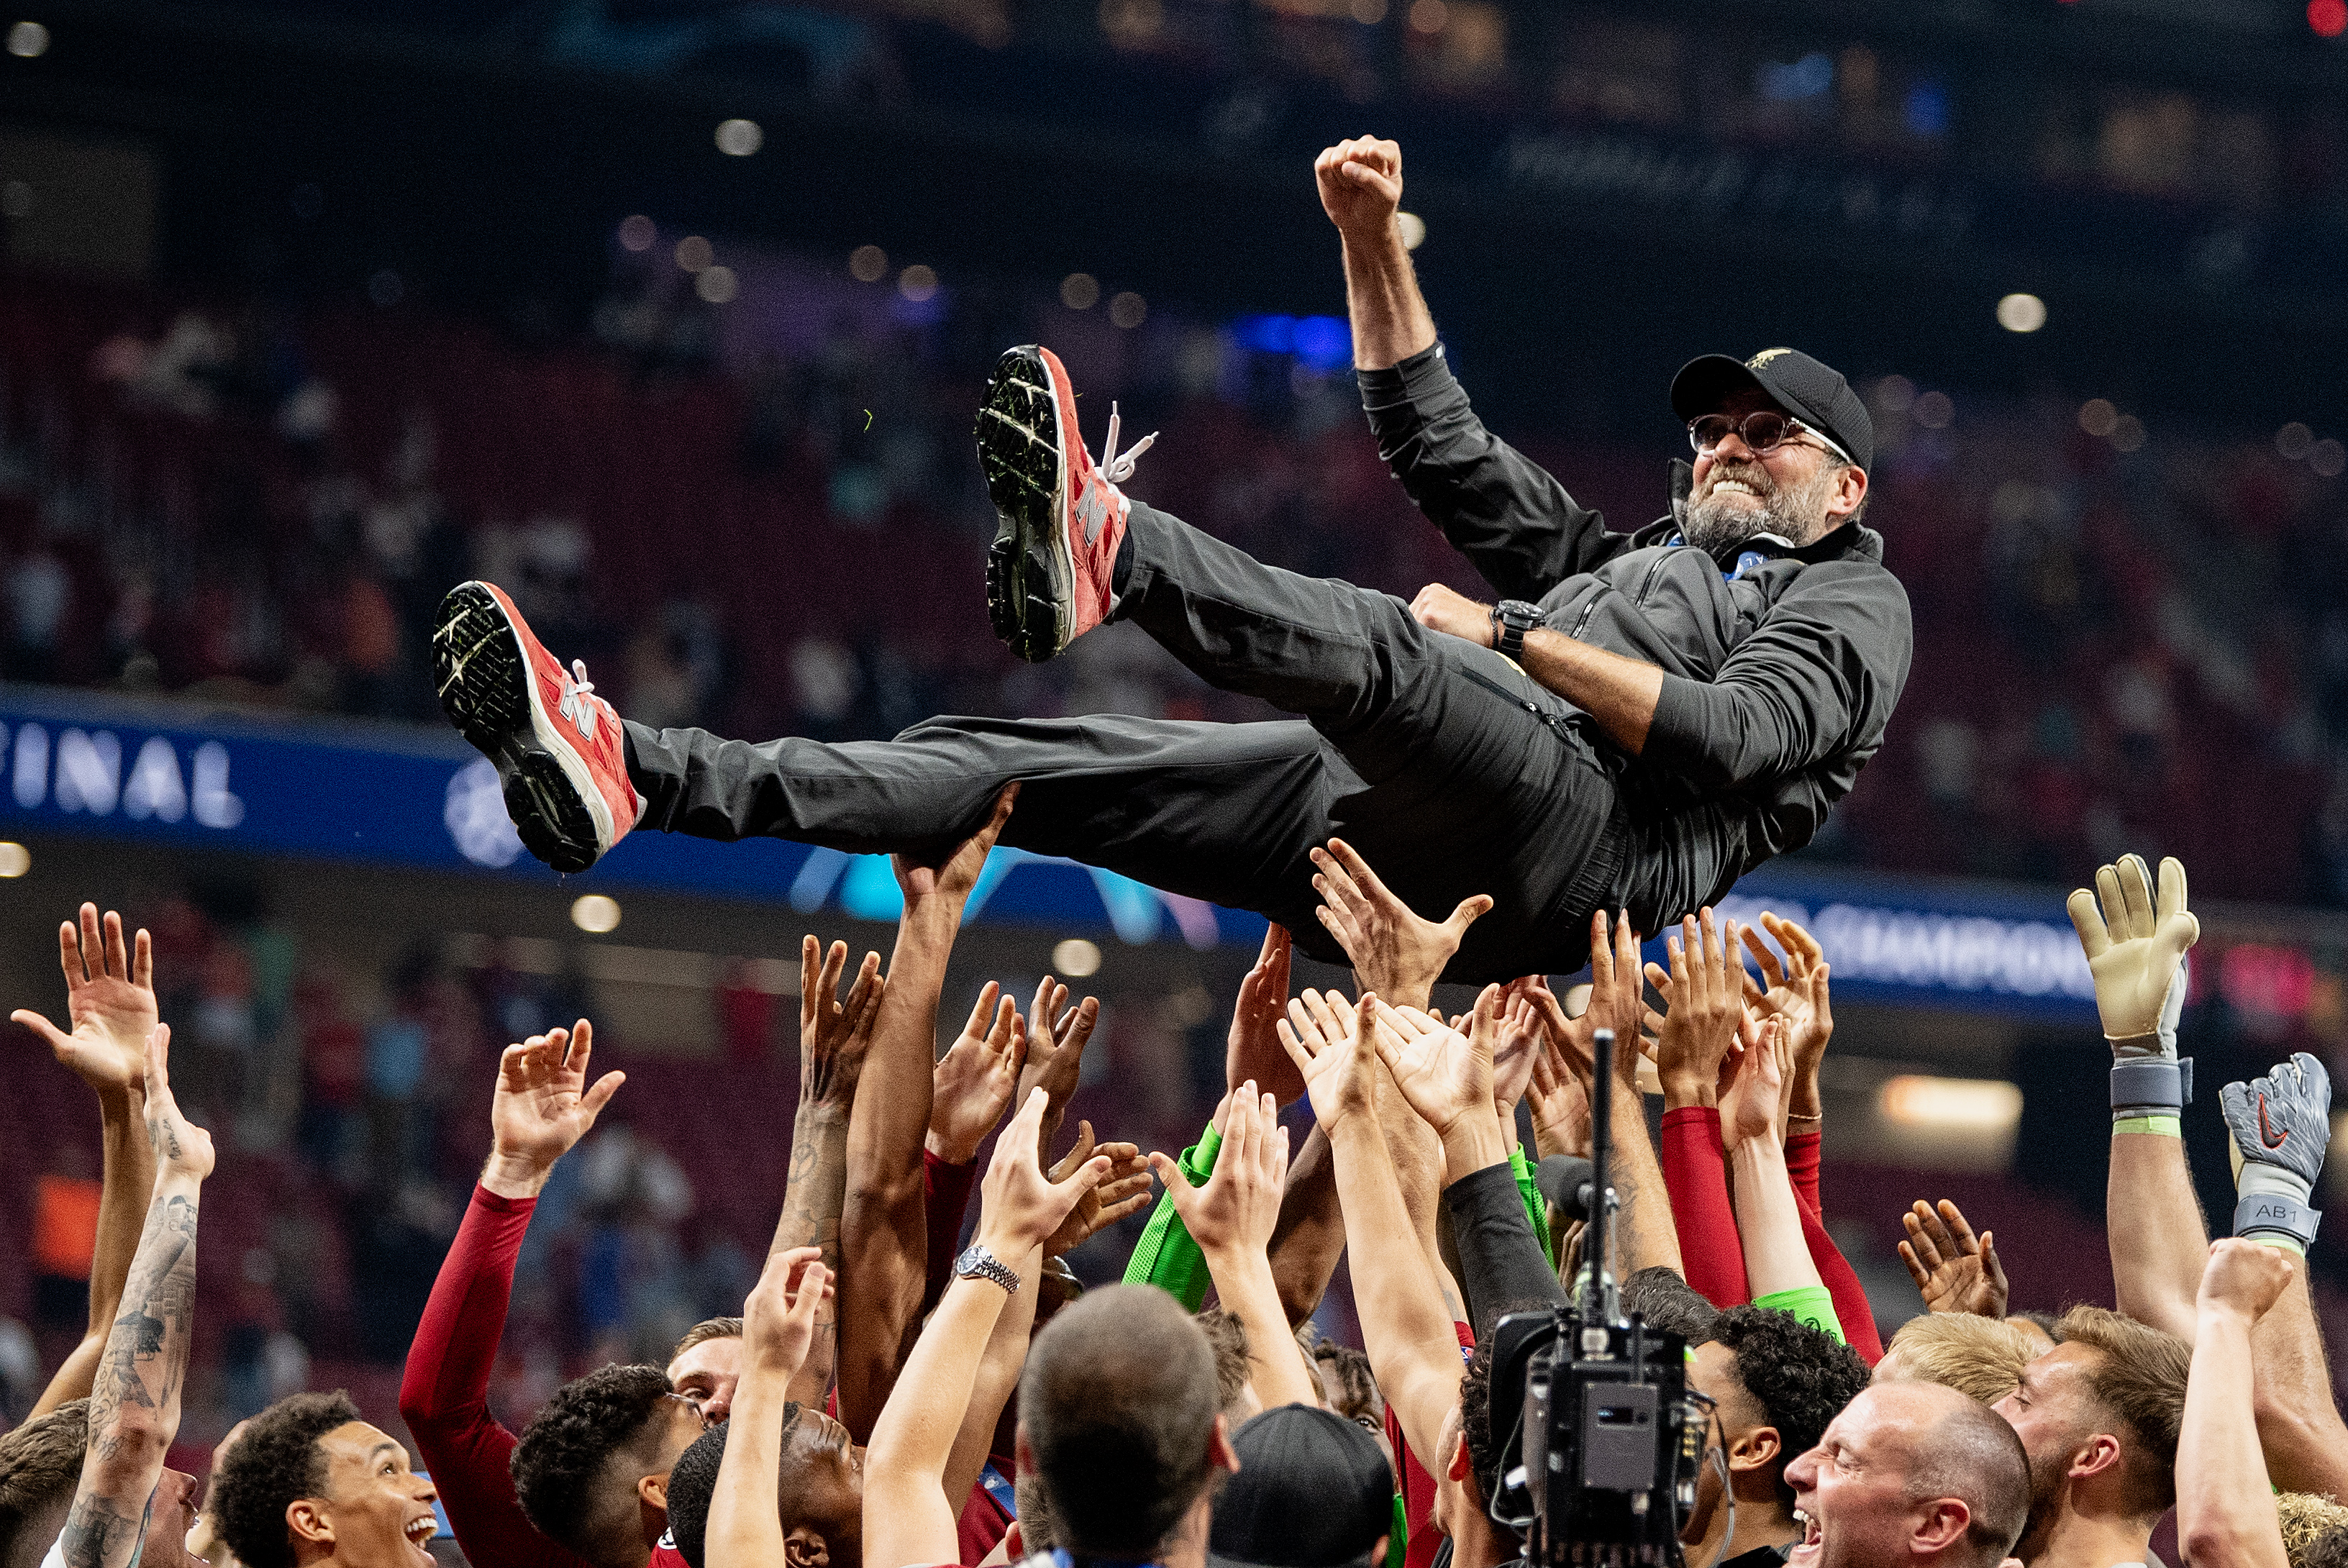 Liverpool coach Jurgen Klopp celebrates after winning the 2019 Champions League final.